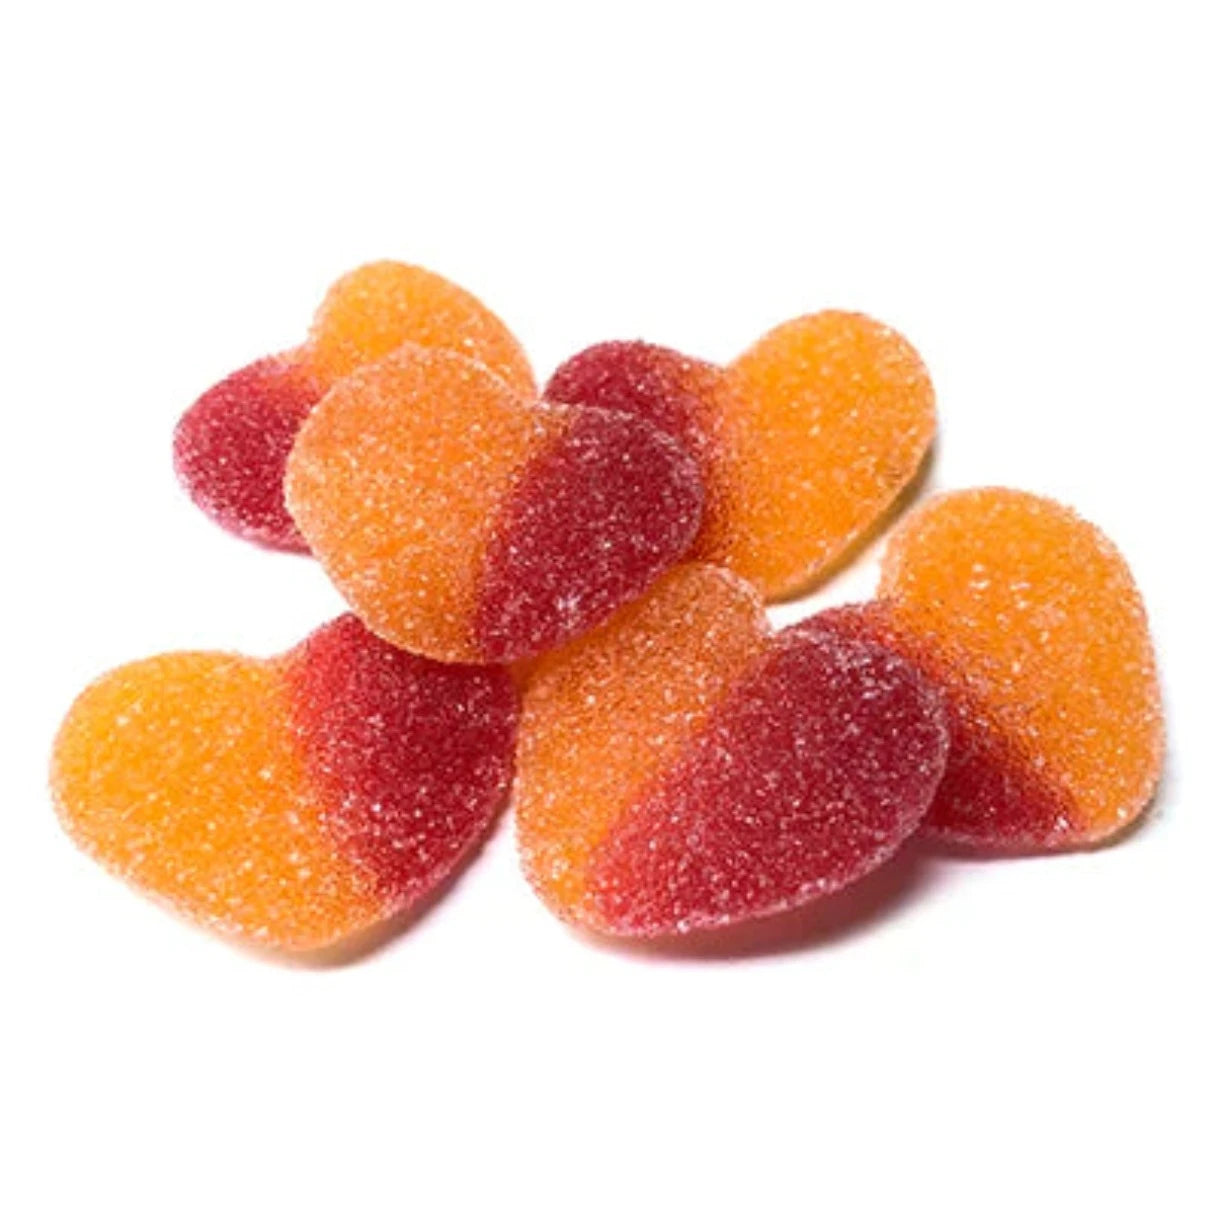 Vidal Gummi Peach Hearts 4.4lb - 1ct